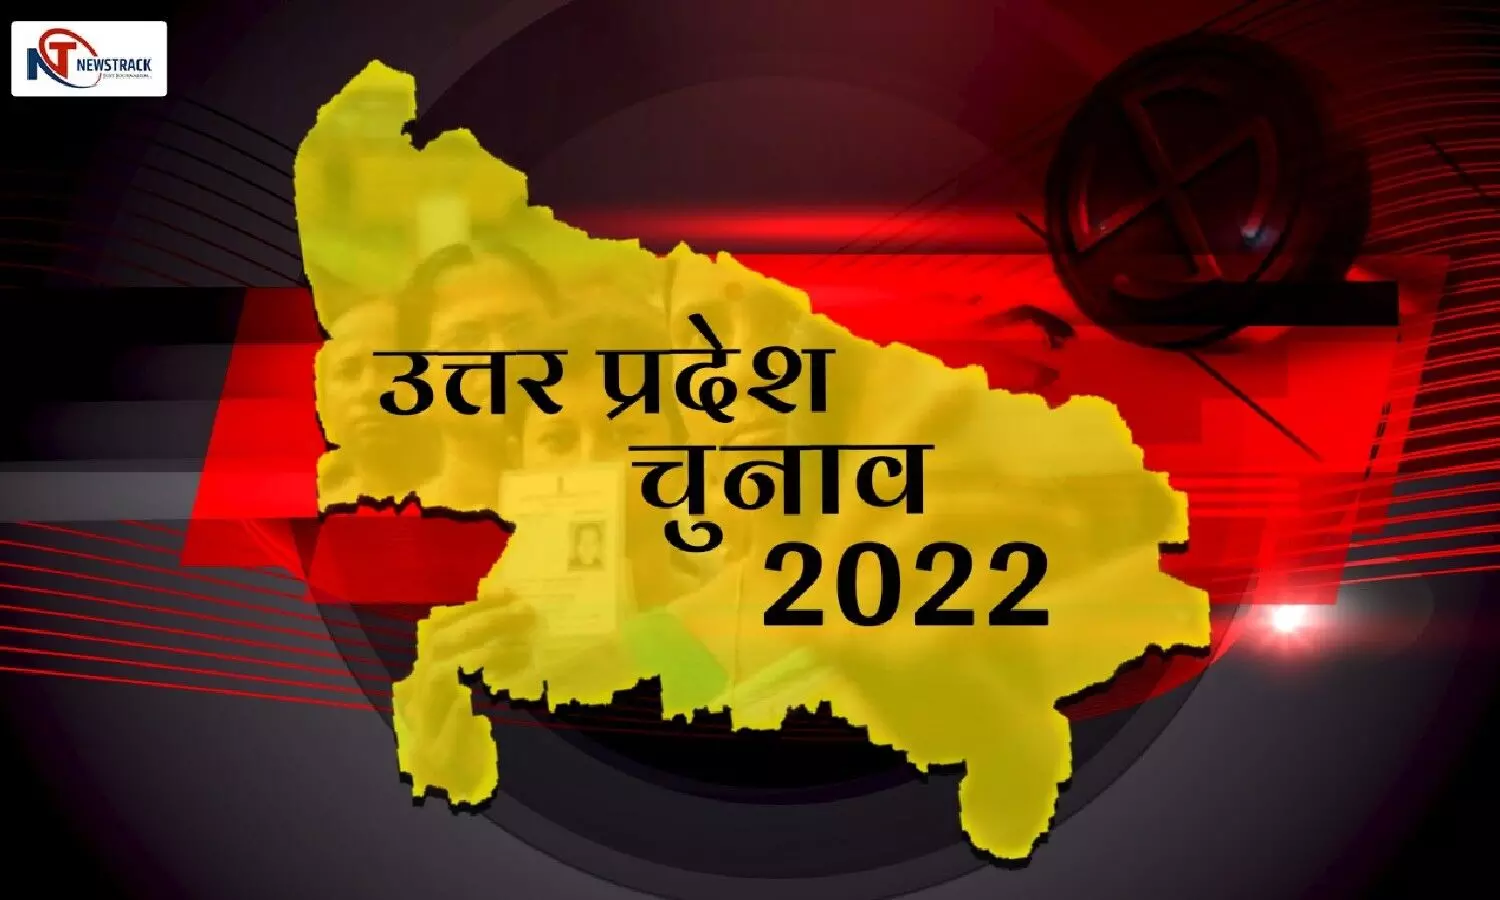 UP Election 2022: चुनाव अधिसूचना के पहले यूपी में विकास योजनाओं की झड़ी लगाएंगे मोदी